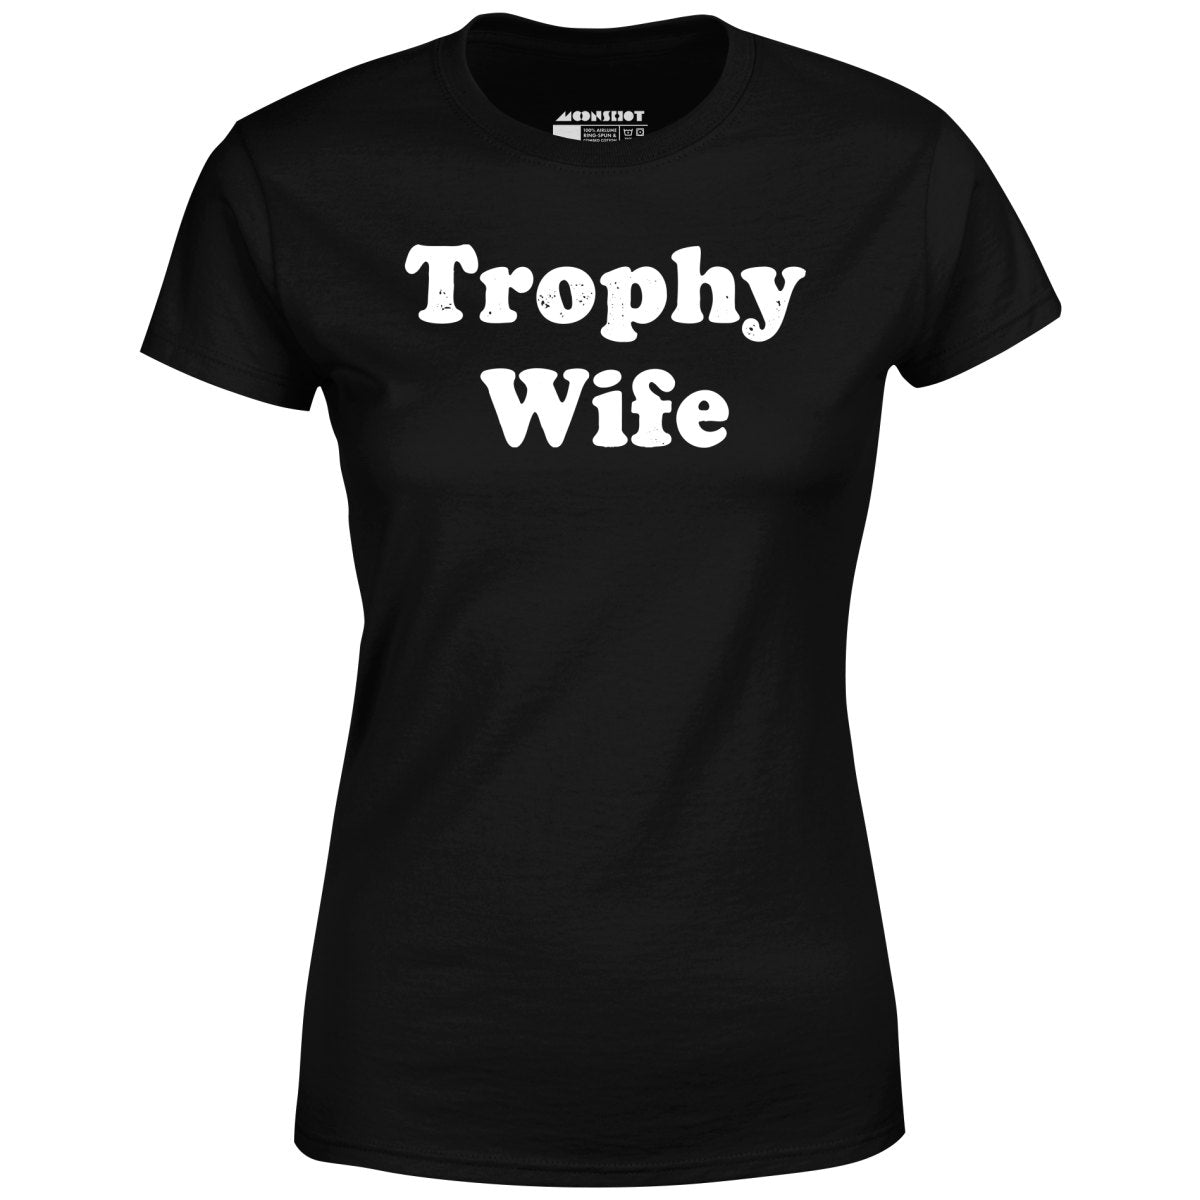 Trophy Wife - Women's T-Shirt